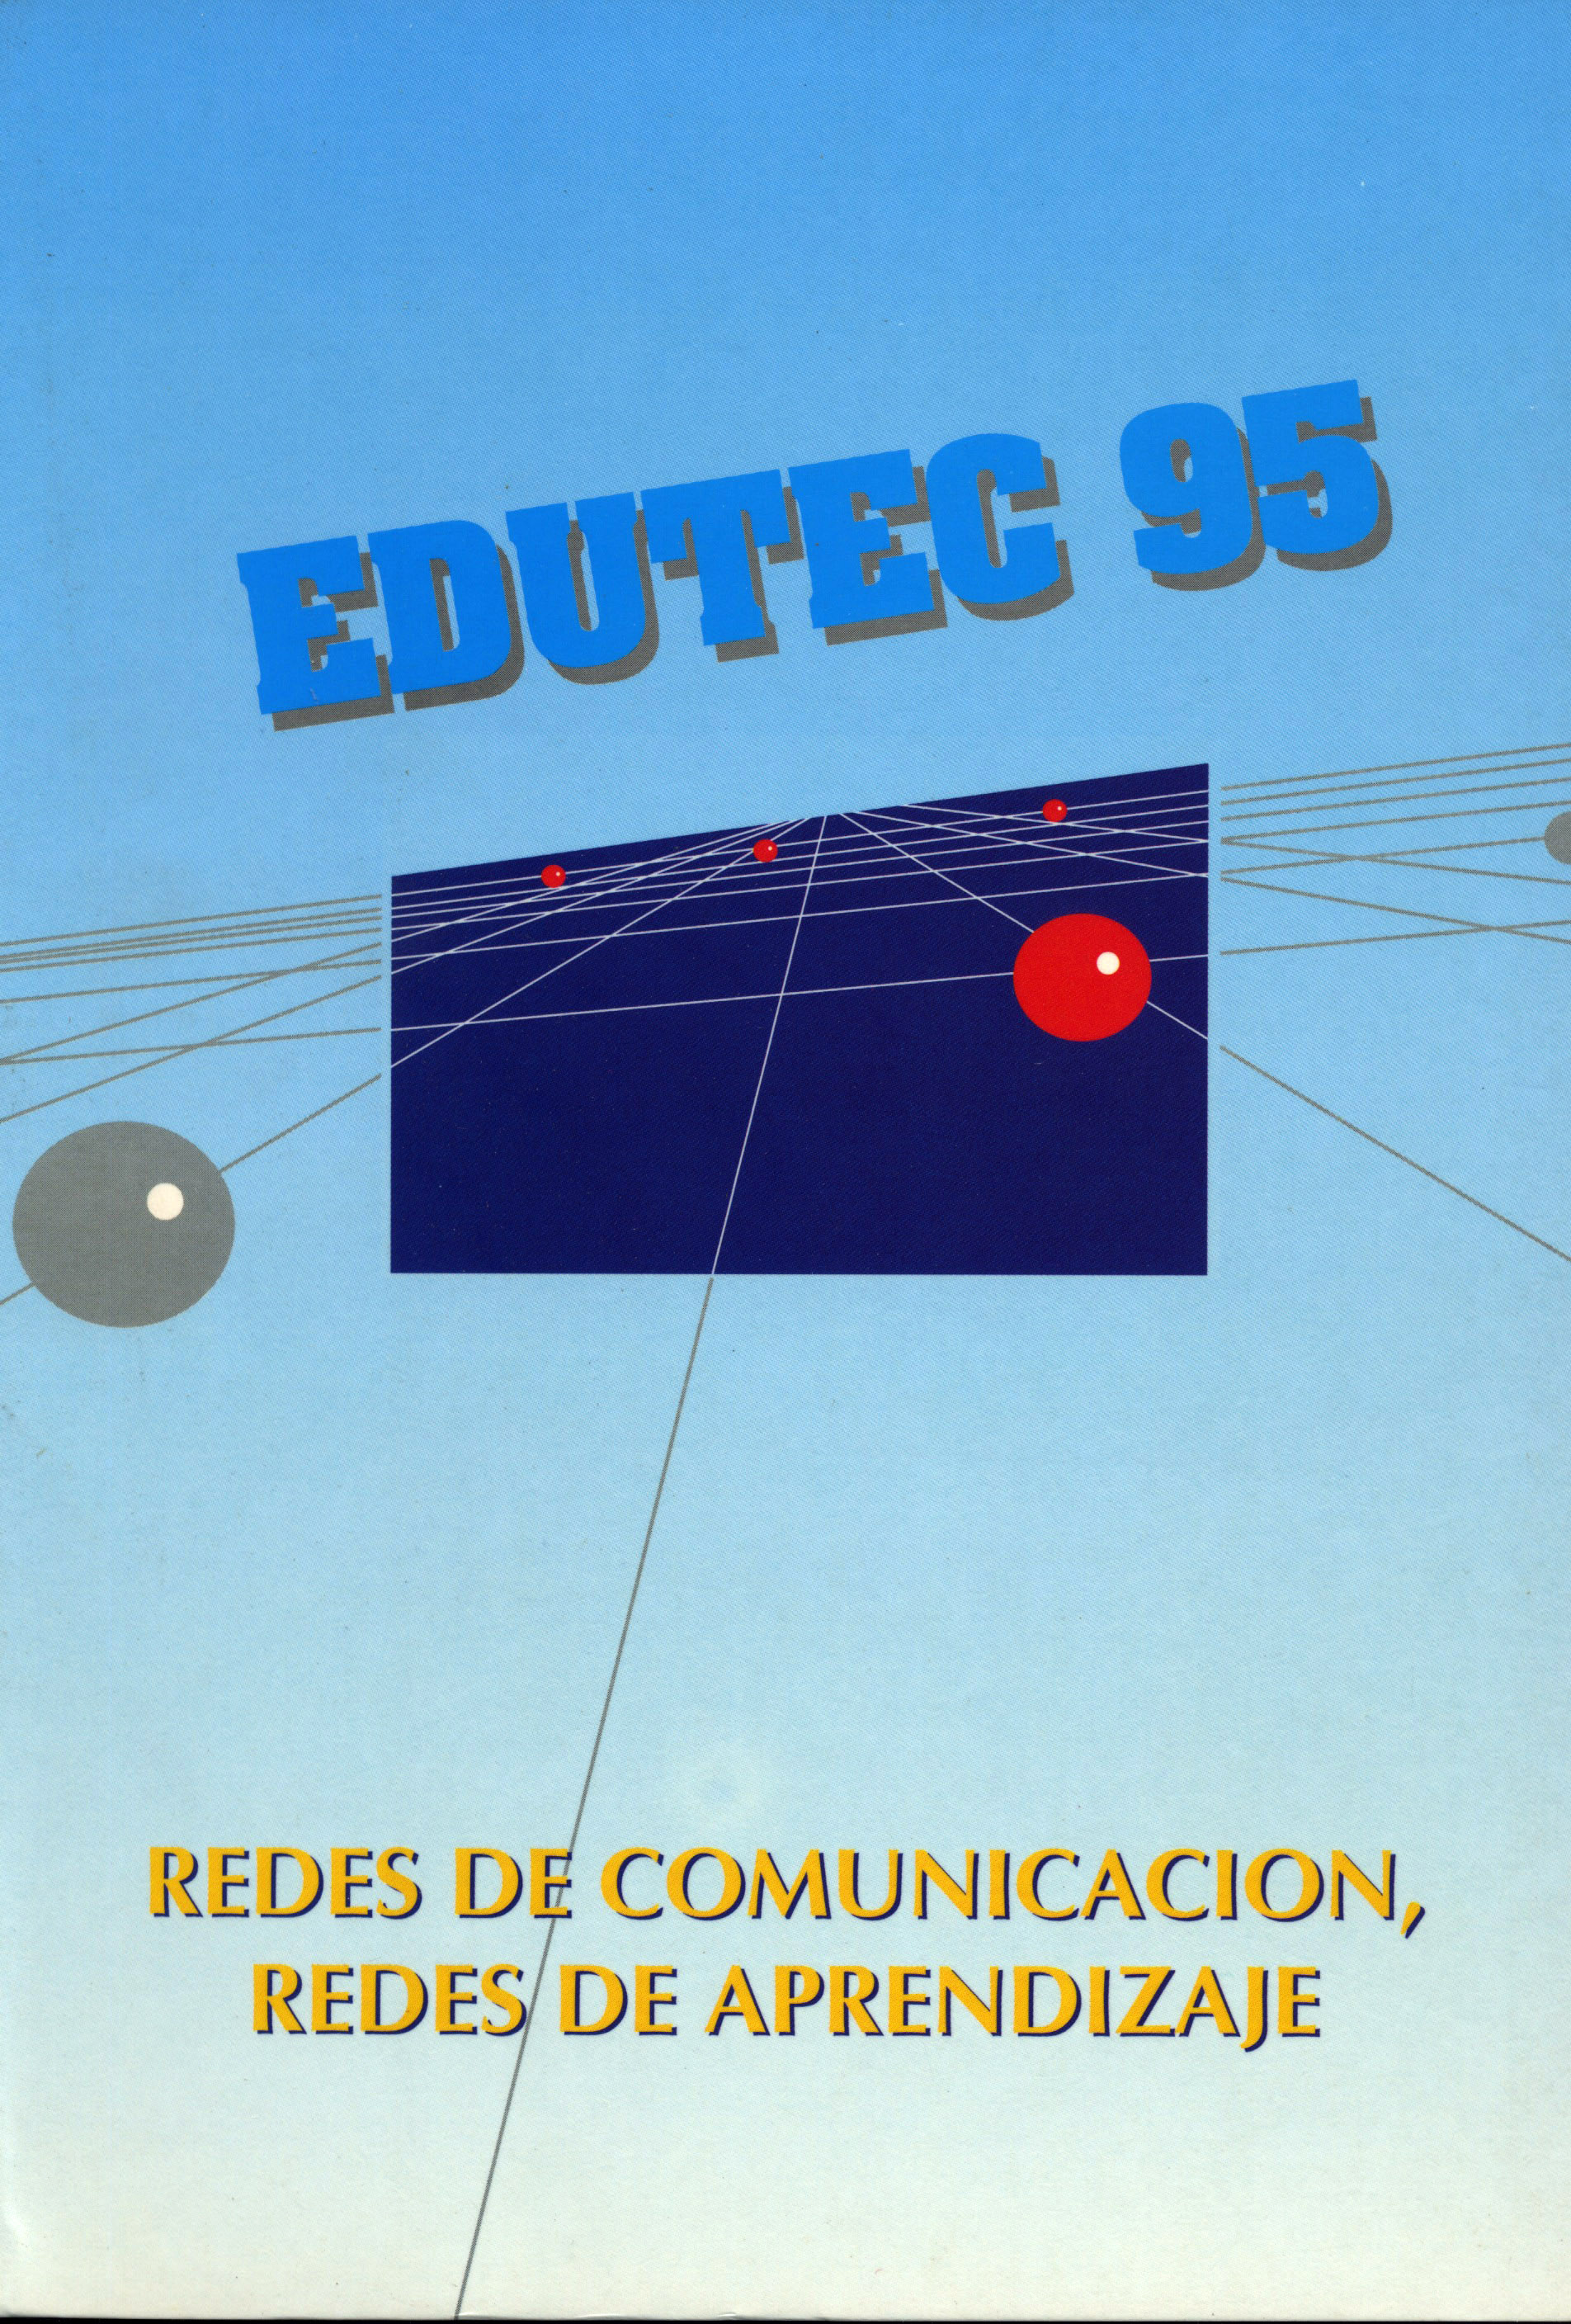 Edutec 95. Redes de comunicación, redes